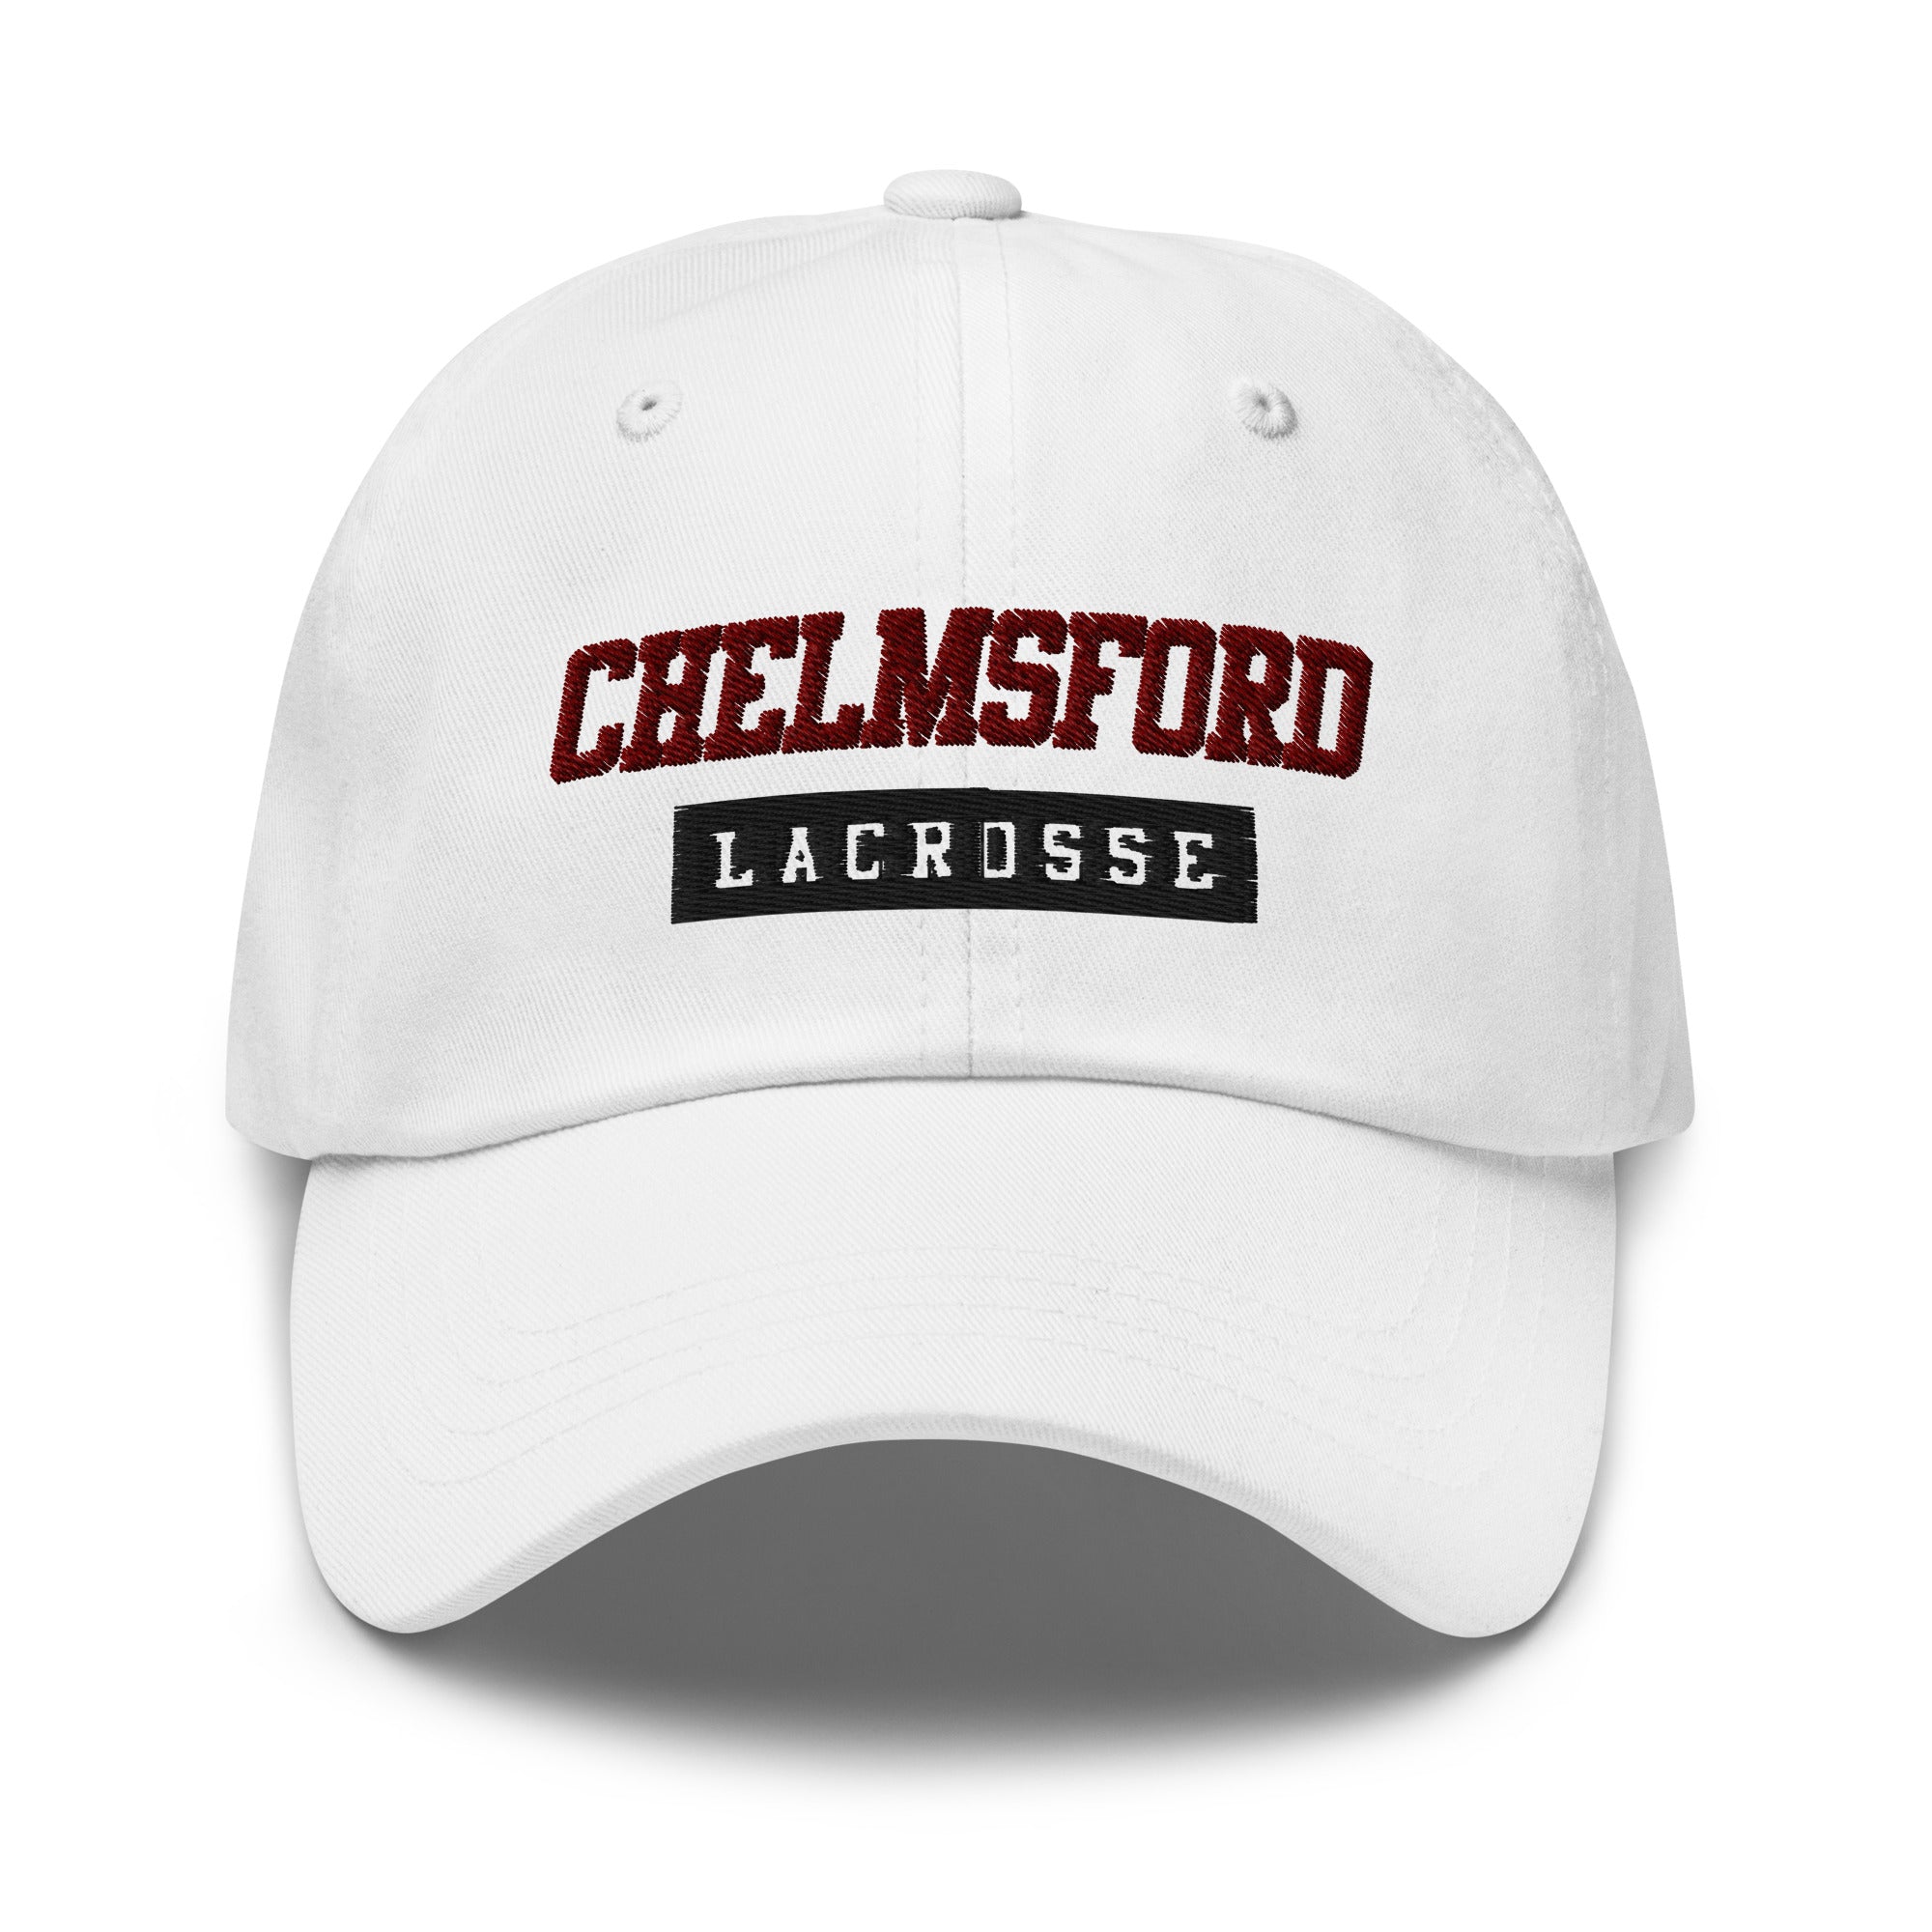 Chelmsford Dad hat